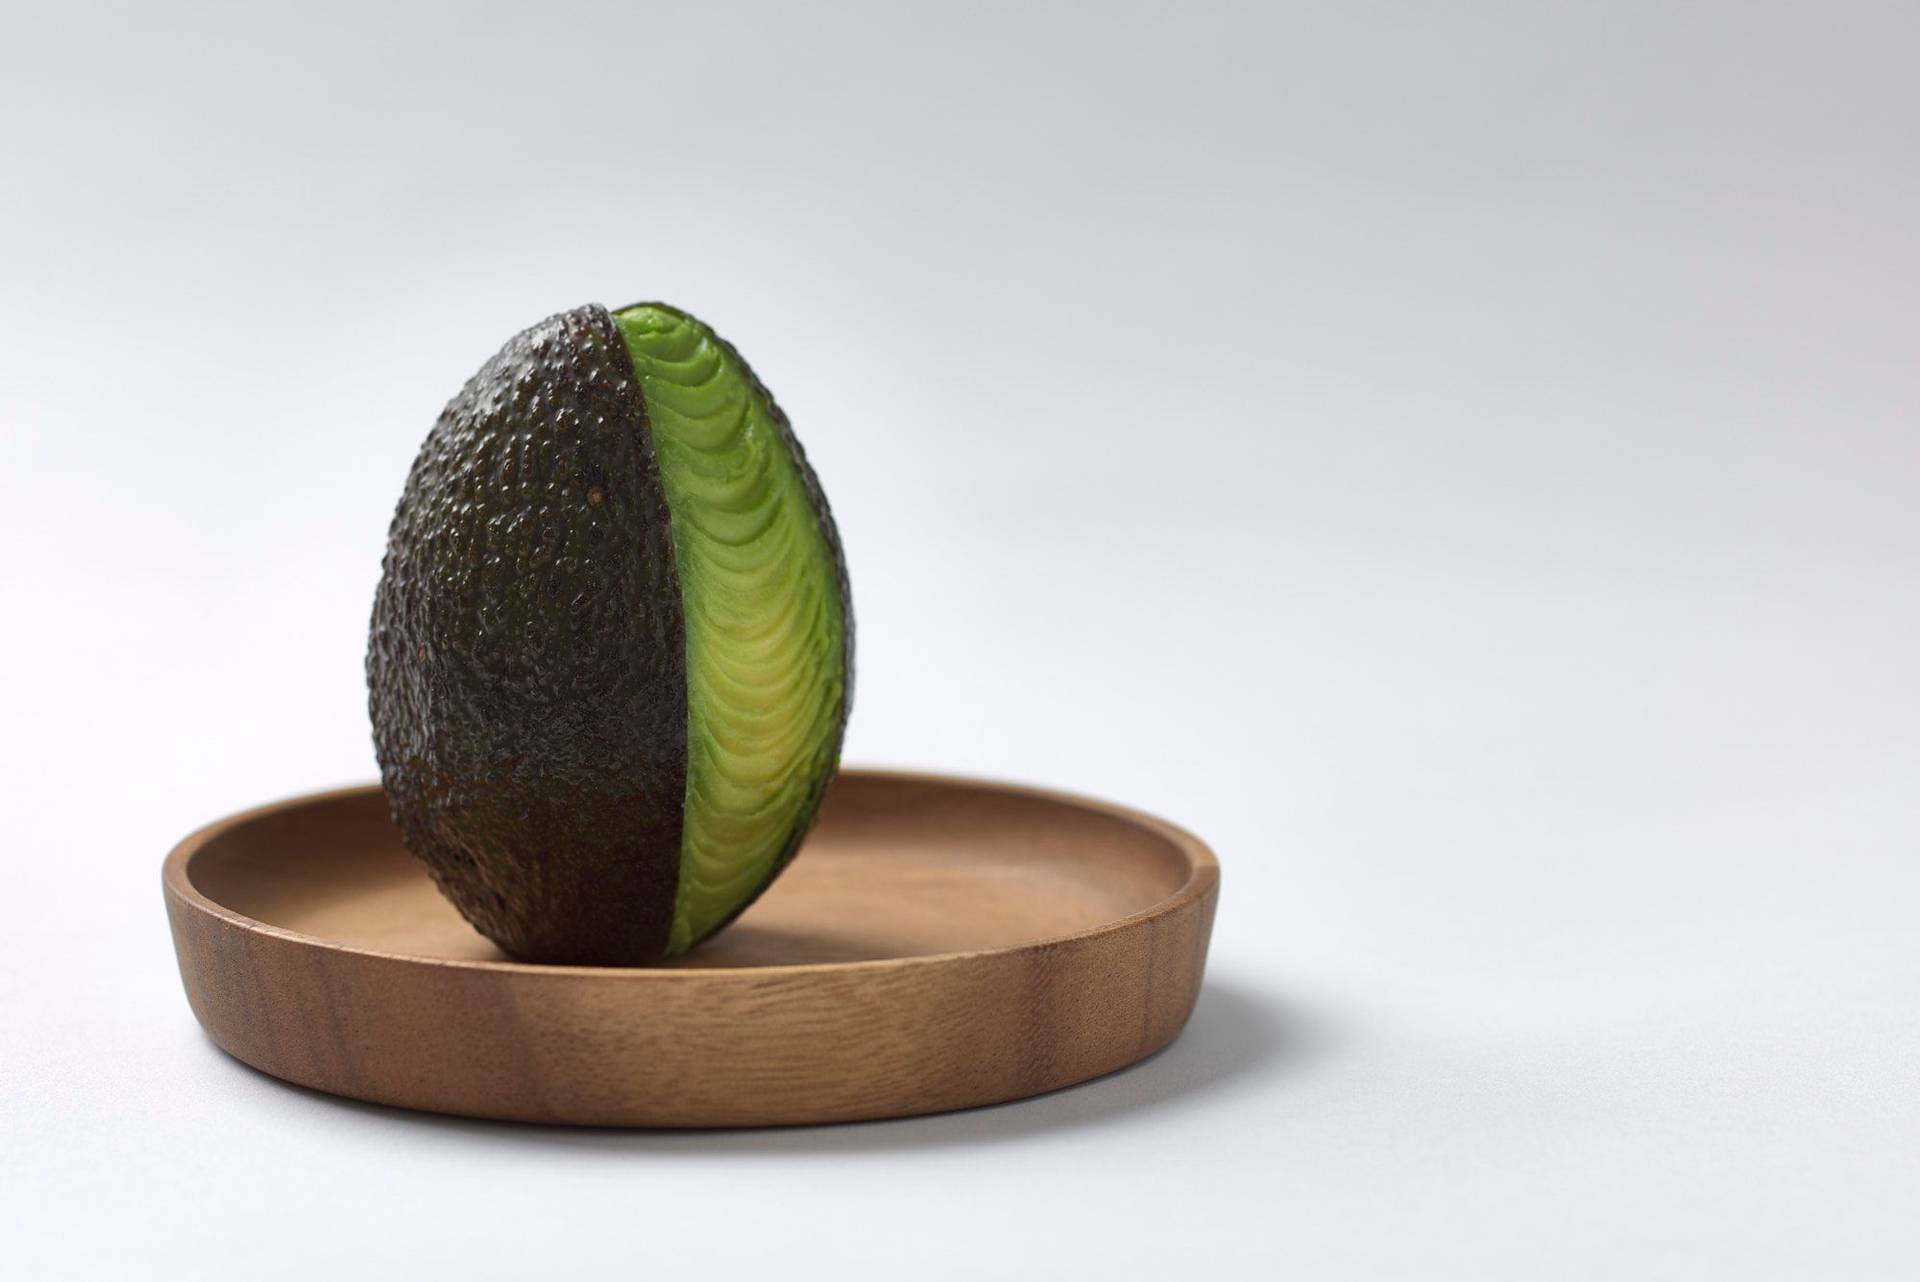 eine avocado auf einem holzteller mit weißem hintergrund